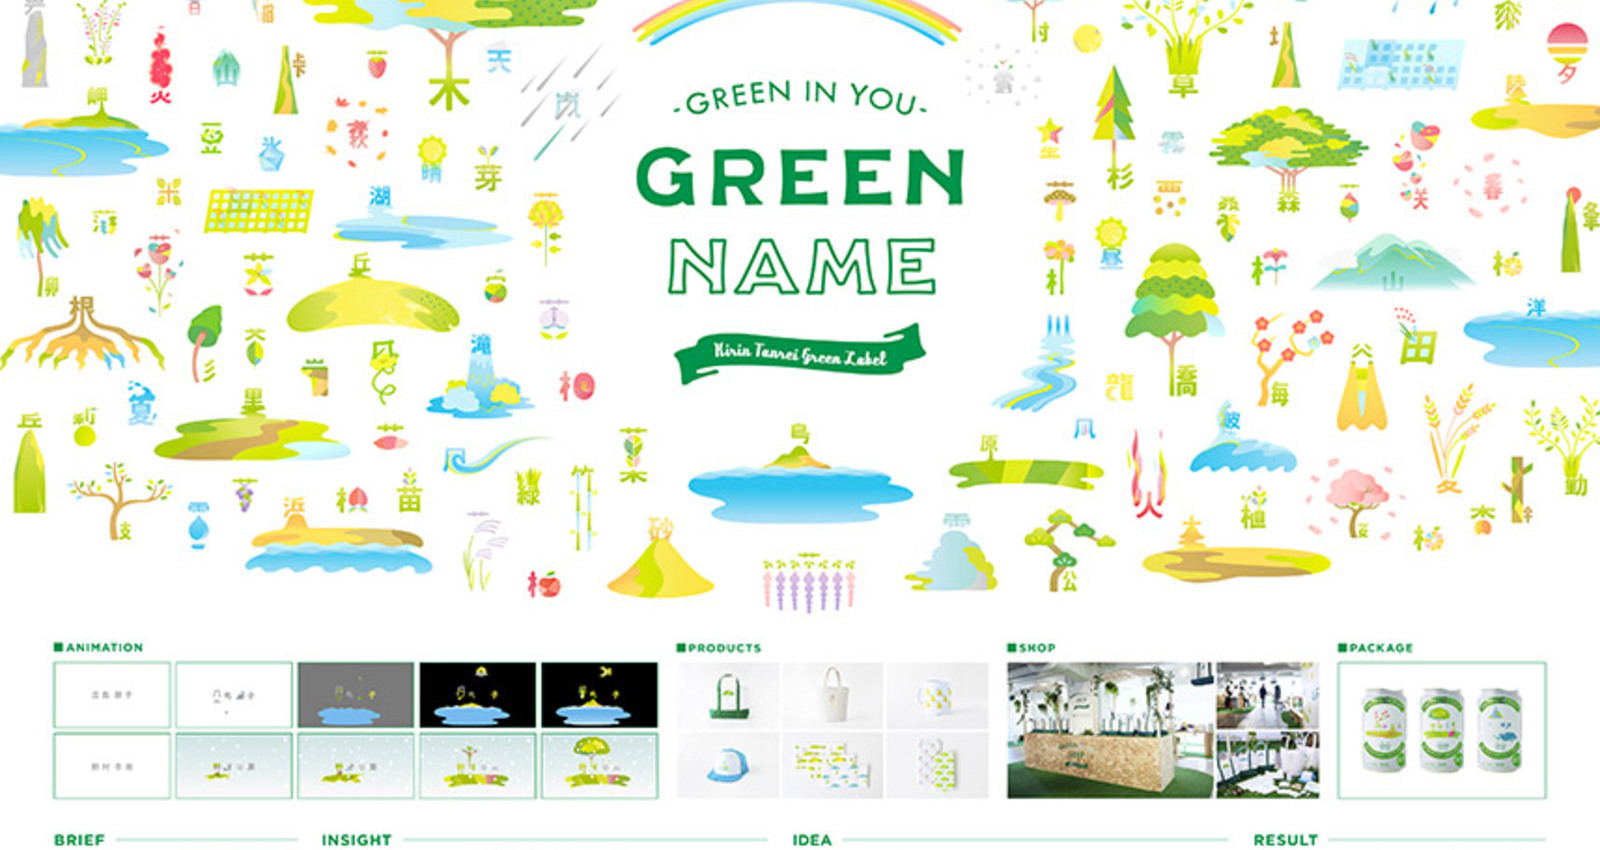 Green Name